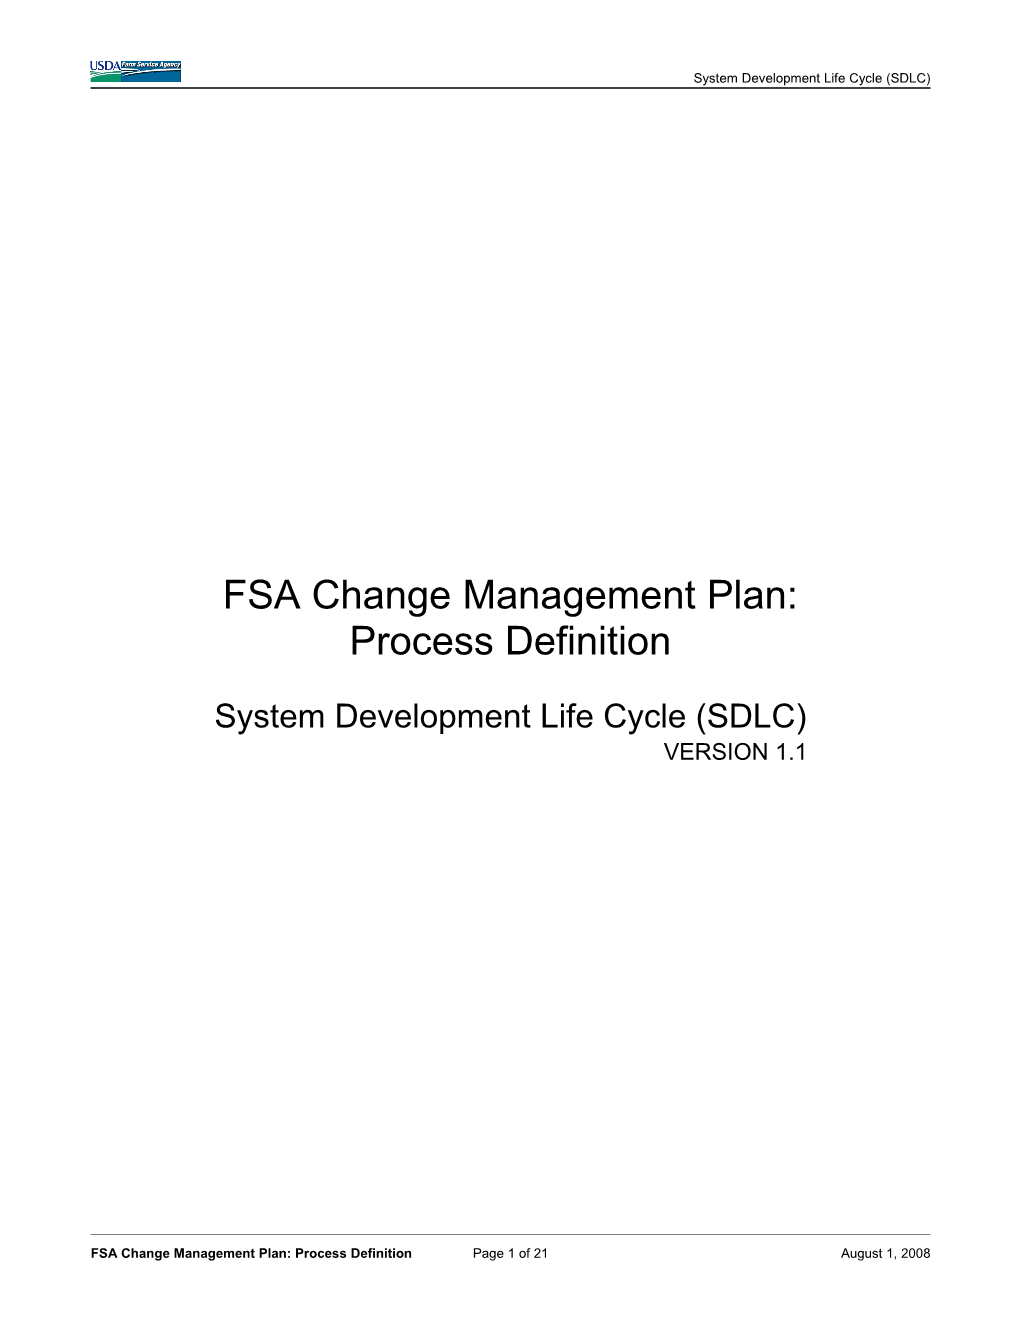 FSA Change Management Plan: Process Definition